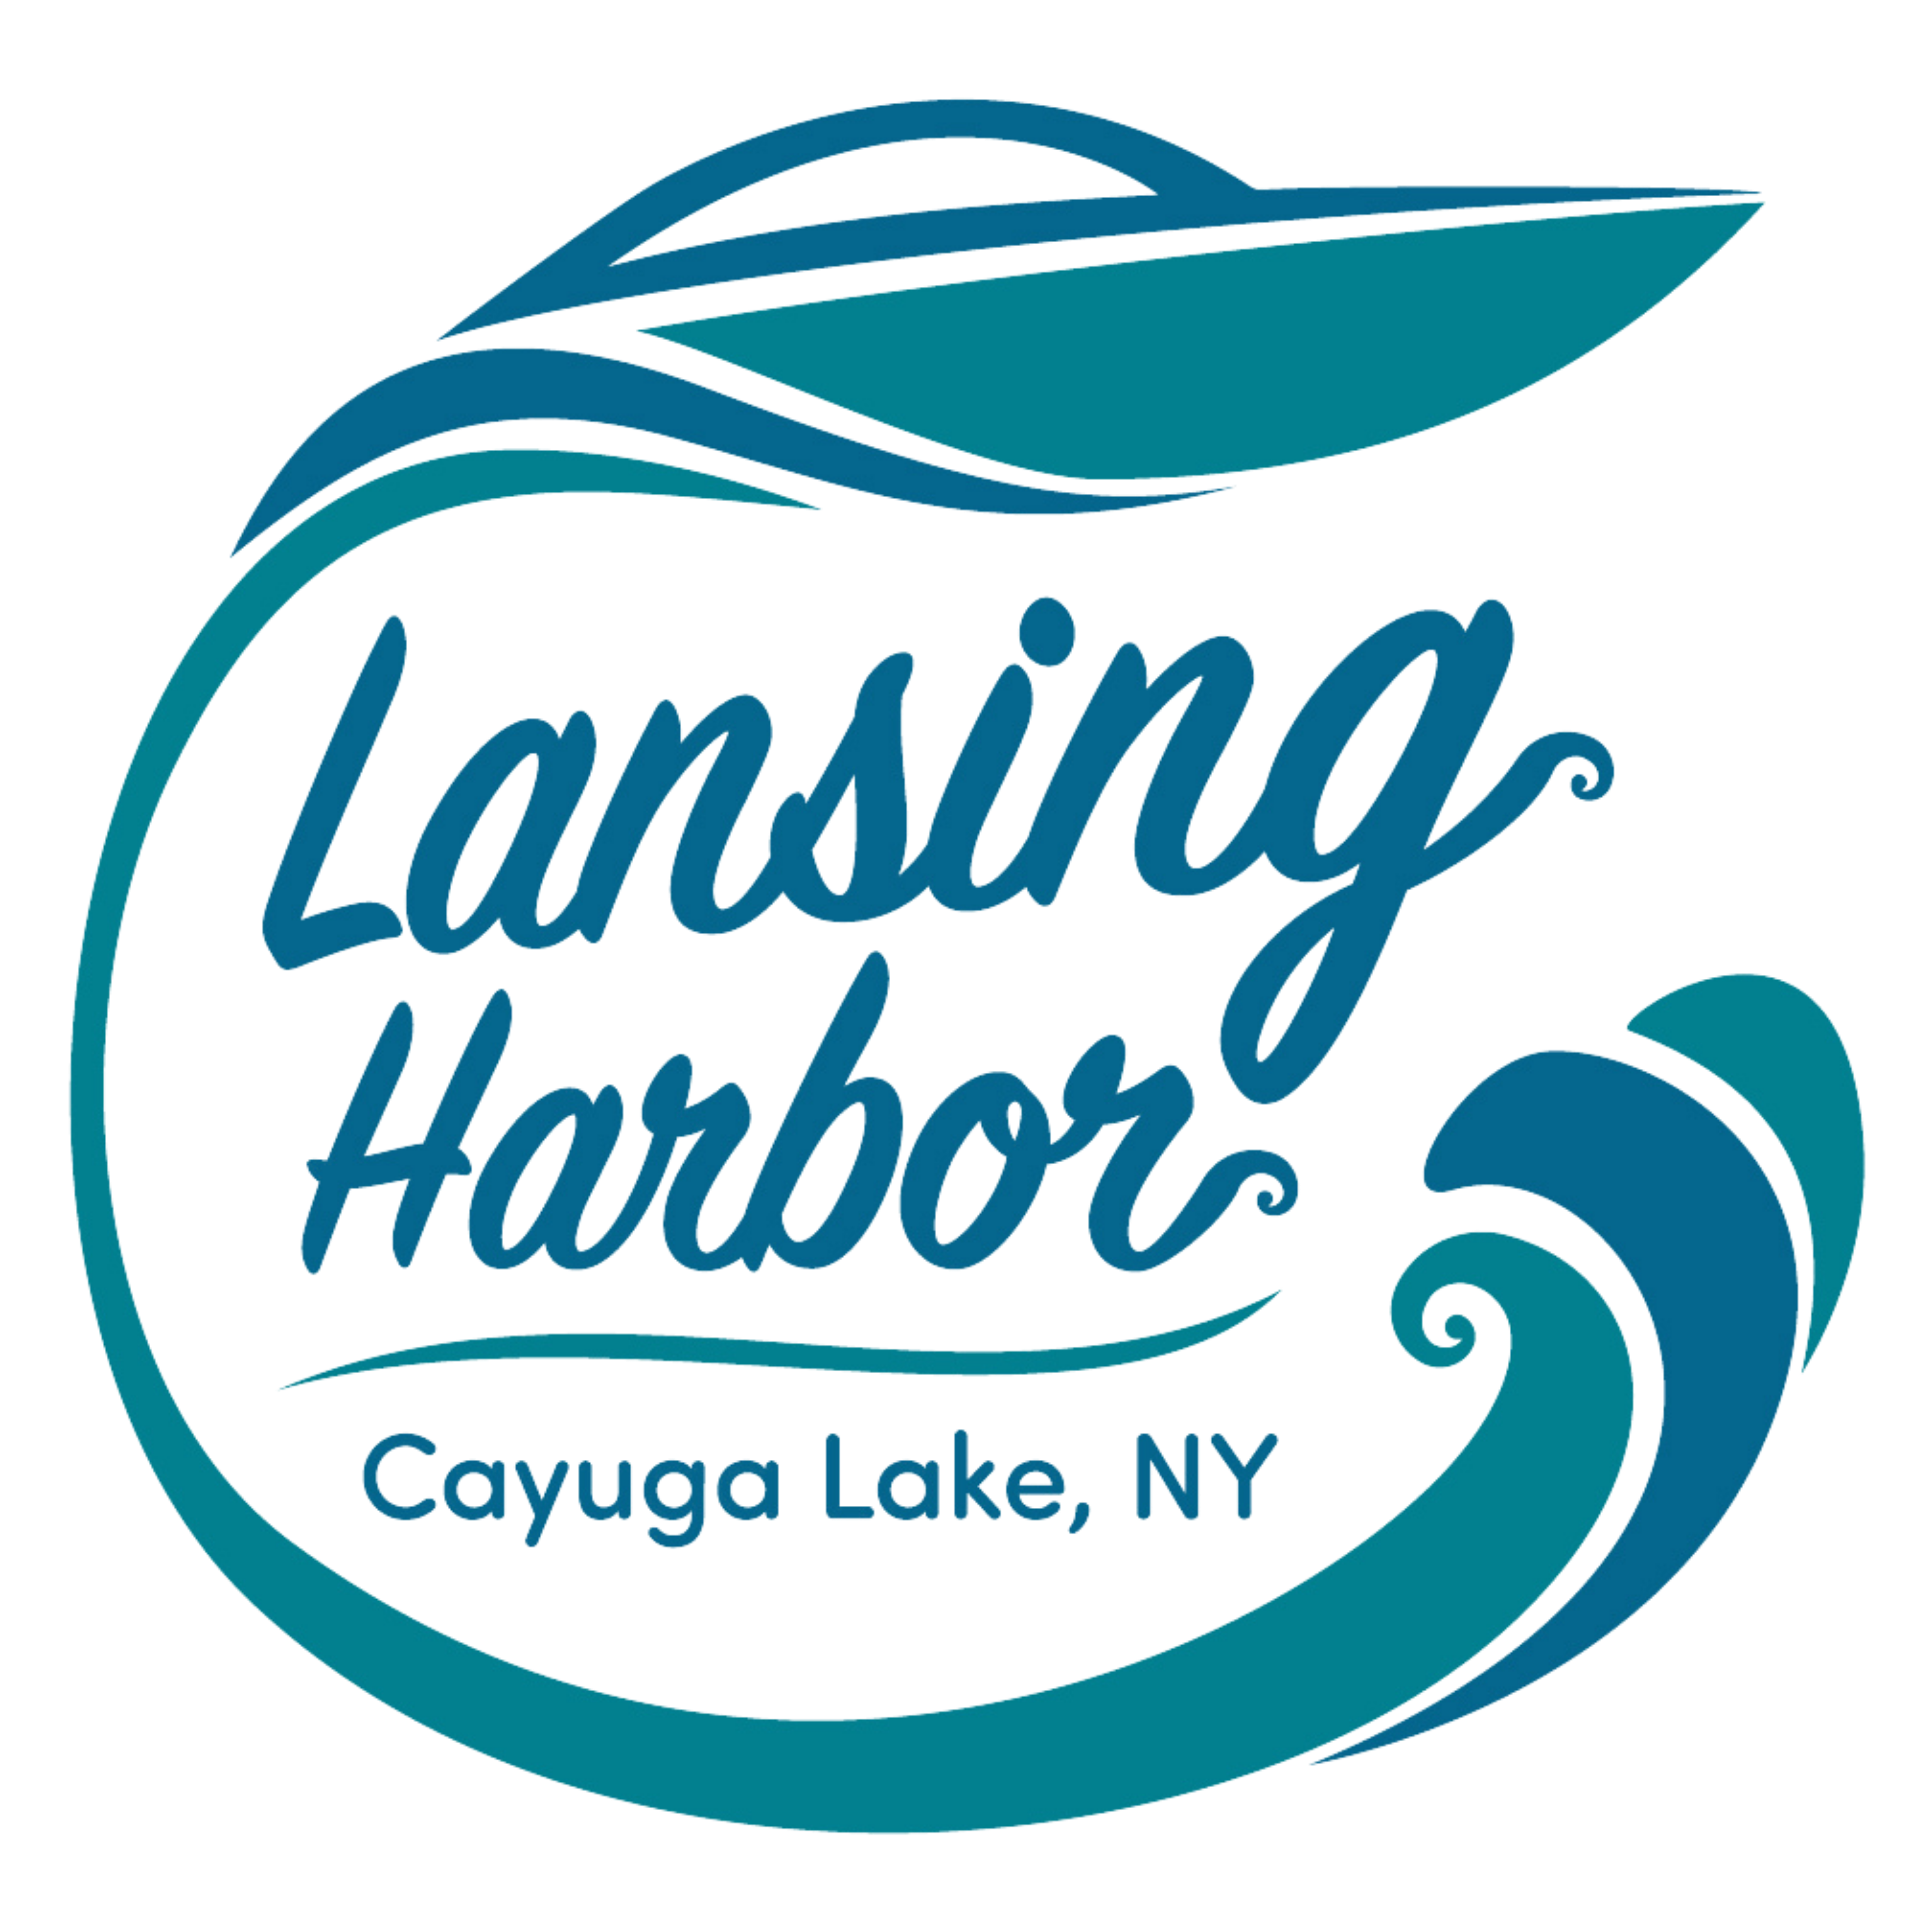 Lansing Harbor